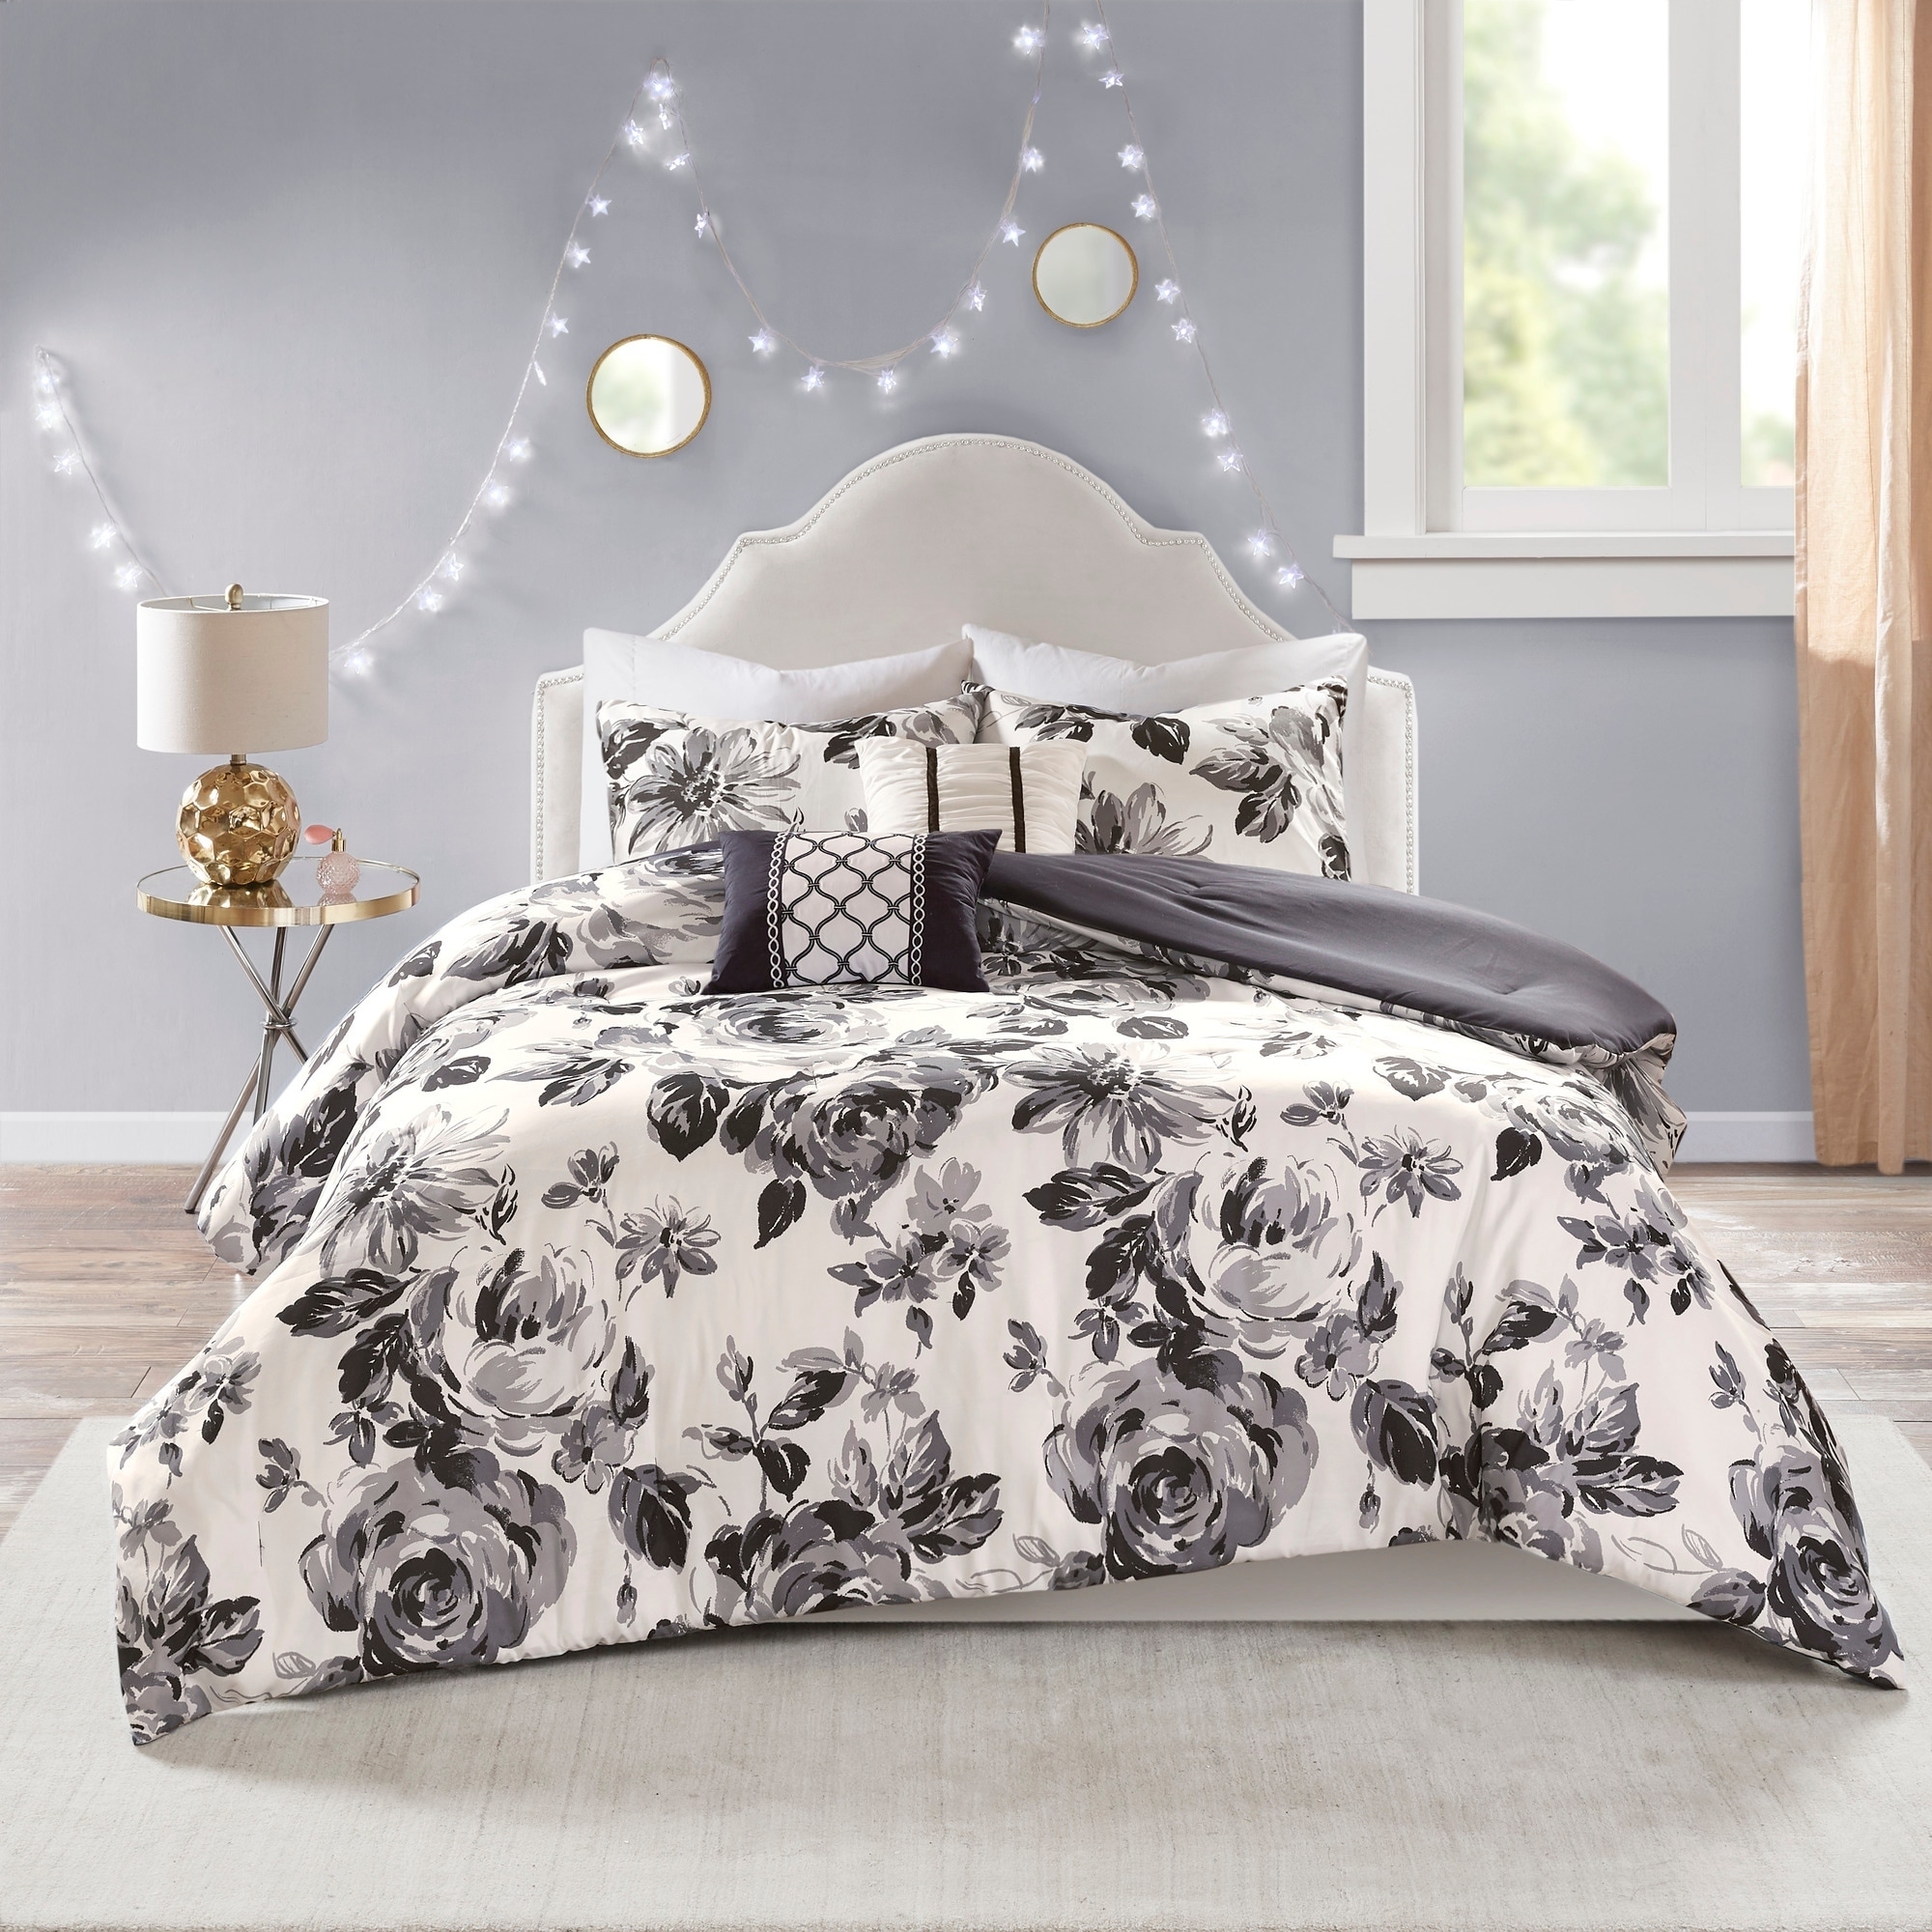 Shop Intelligent Design Renee Black White Floral Print Comforter